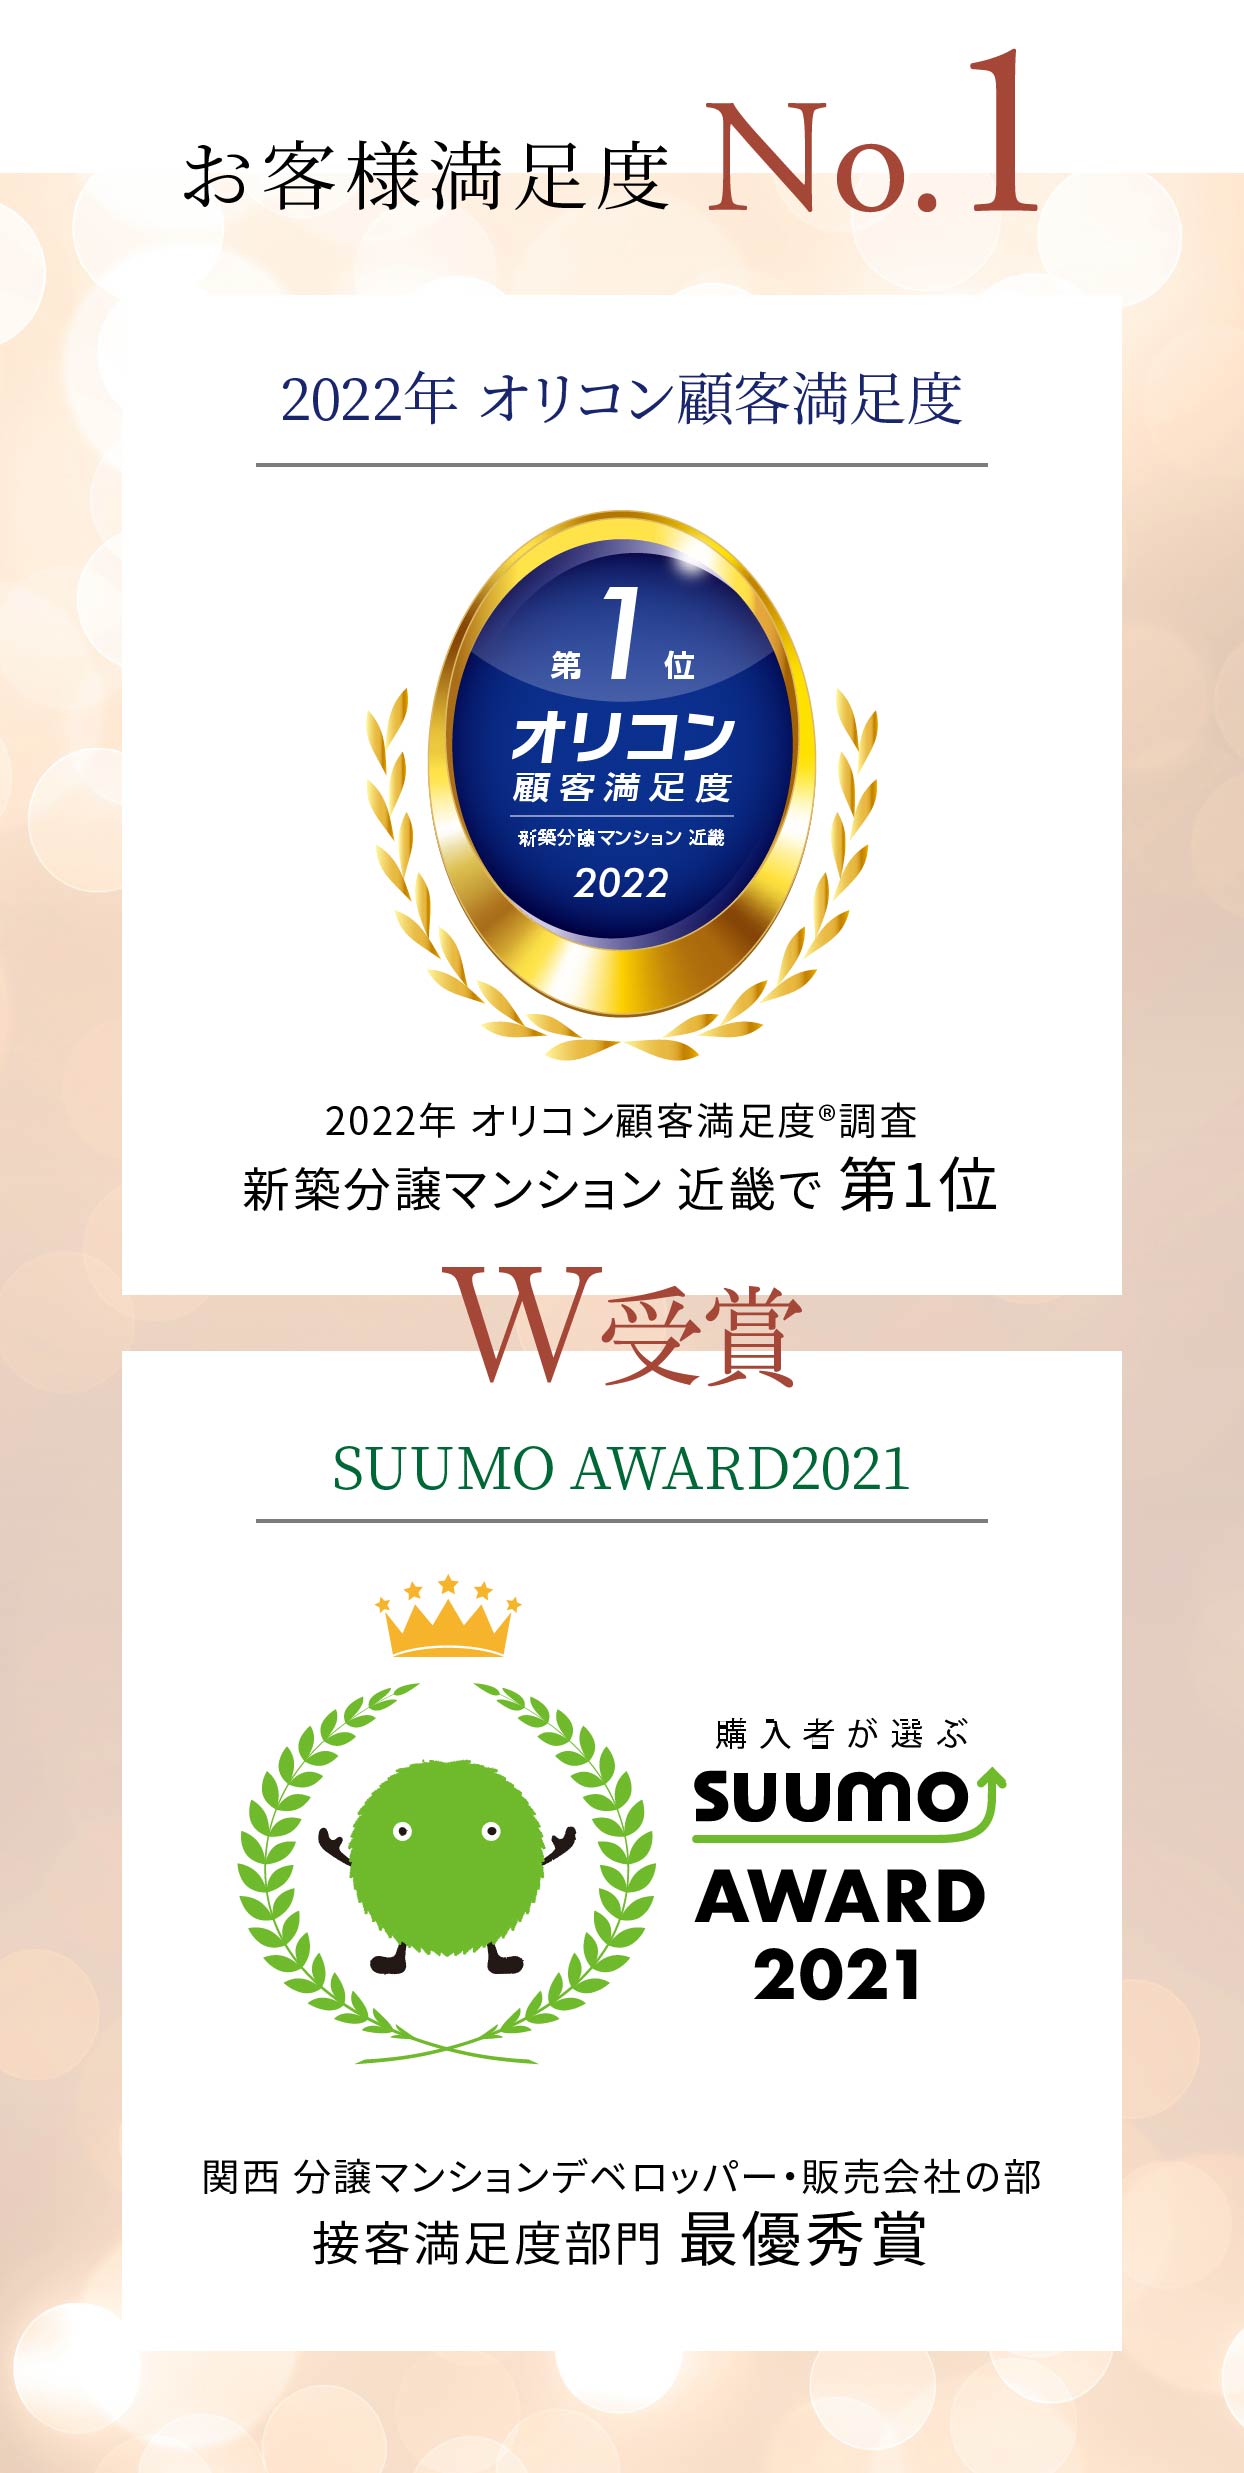 お客様満足度No.1。2022年オリコン顧客満足度、SUUMO AWARD2021、W受賞。